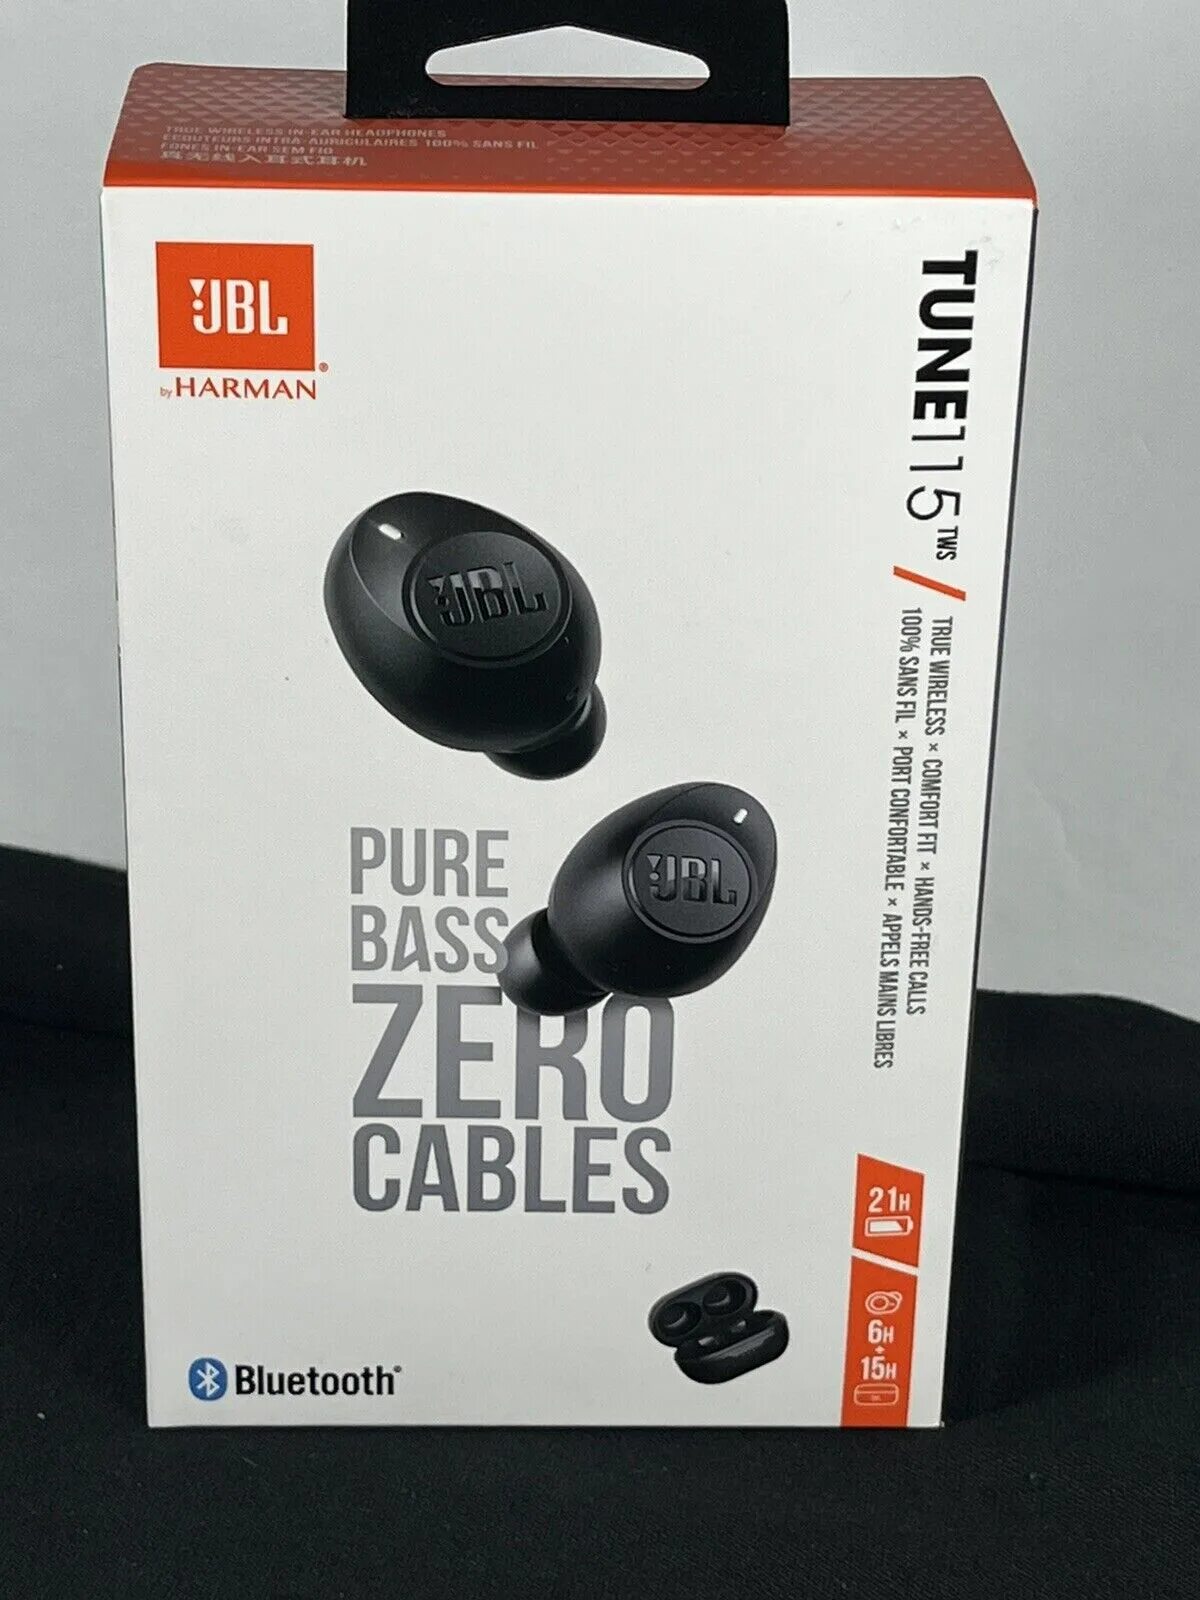 Zero bass. JBL Harman Pure Bass. JBL Pure Bass Zero Cables. Наушники JBL Pure Bass Zero Cables. Pure Bass Zero Cables JBL цена.